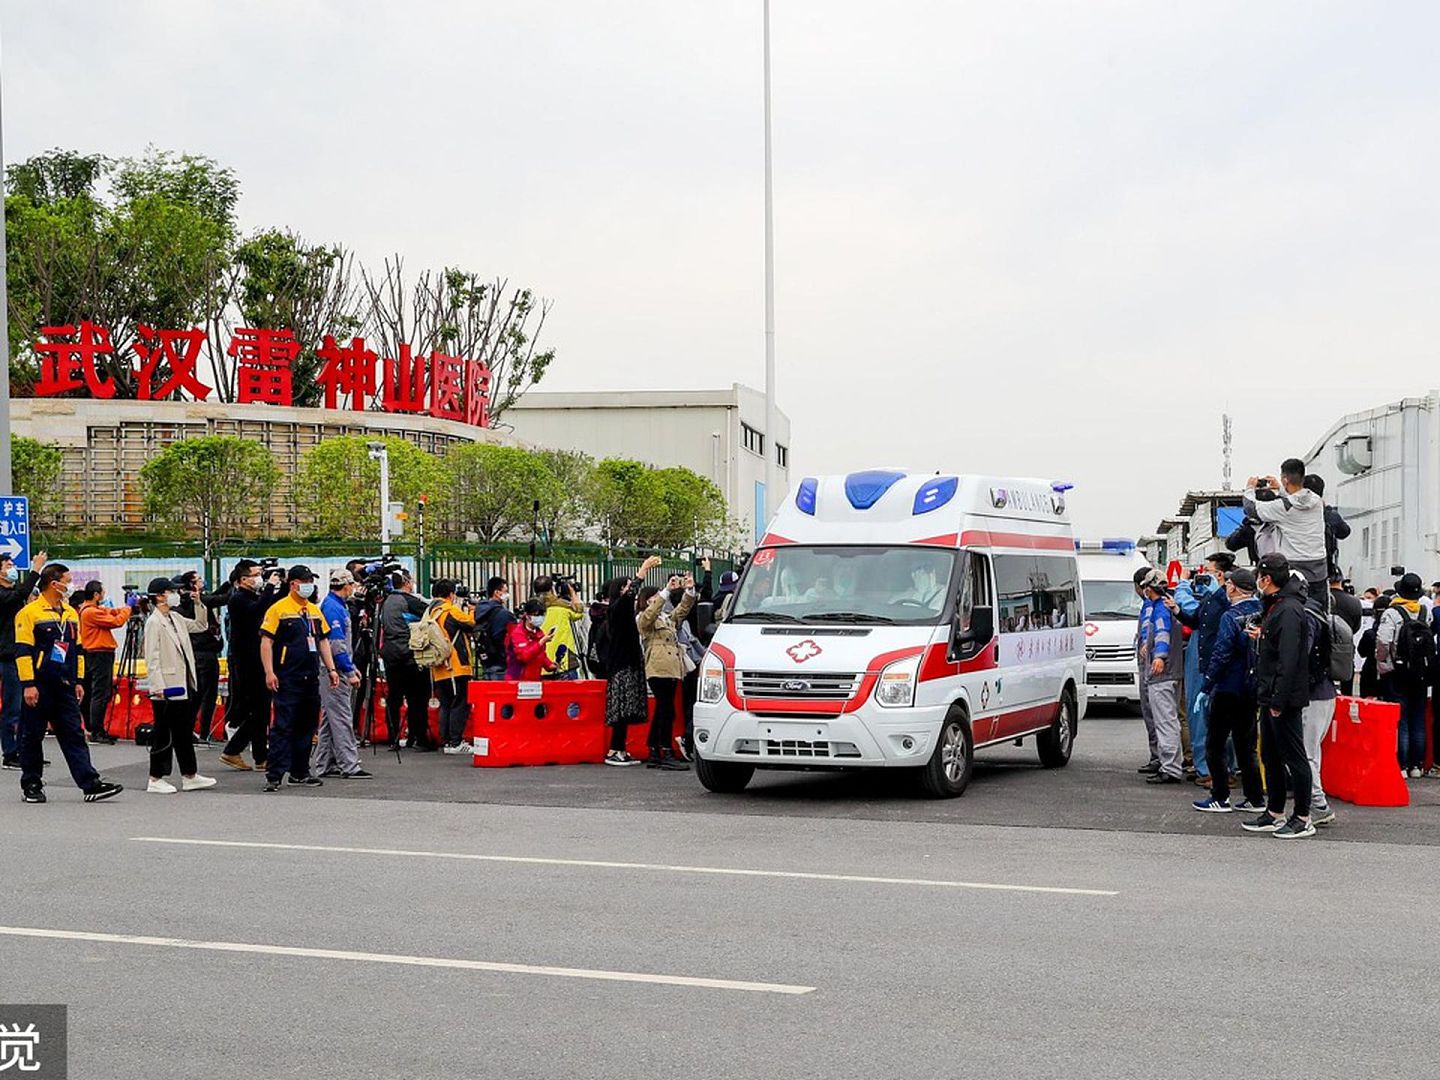 4月14日，武汉雷神山医院最后一批病患转院至武汉大学中南医院继续接受后续治疗。武汉雷神山医院患者当日正式“清零”，医院结束两个多月的运行，于4月15日正式关闭。（VCG）